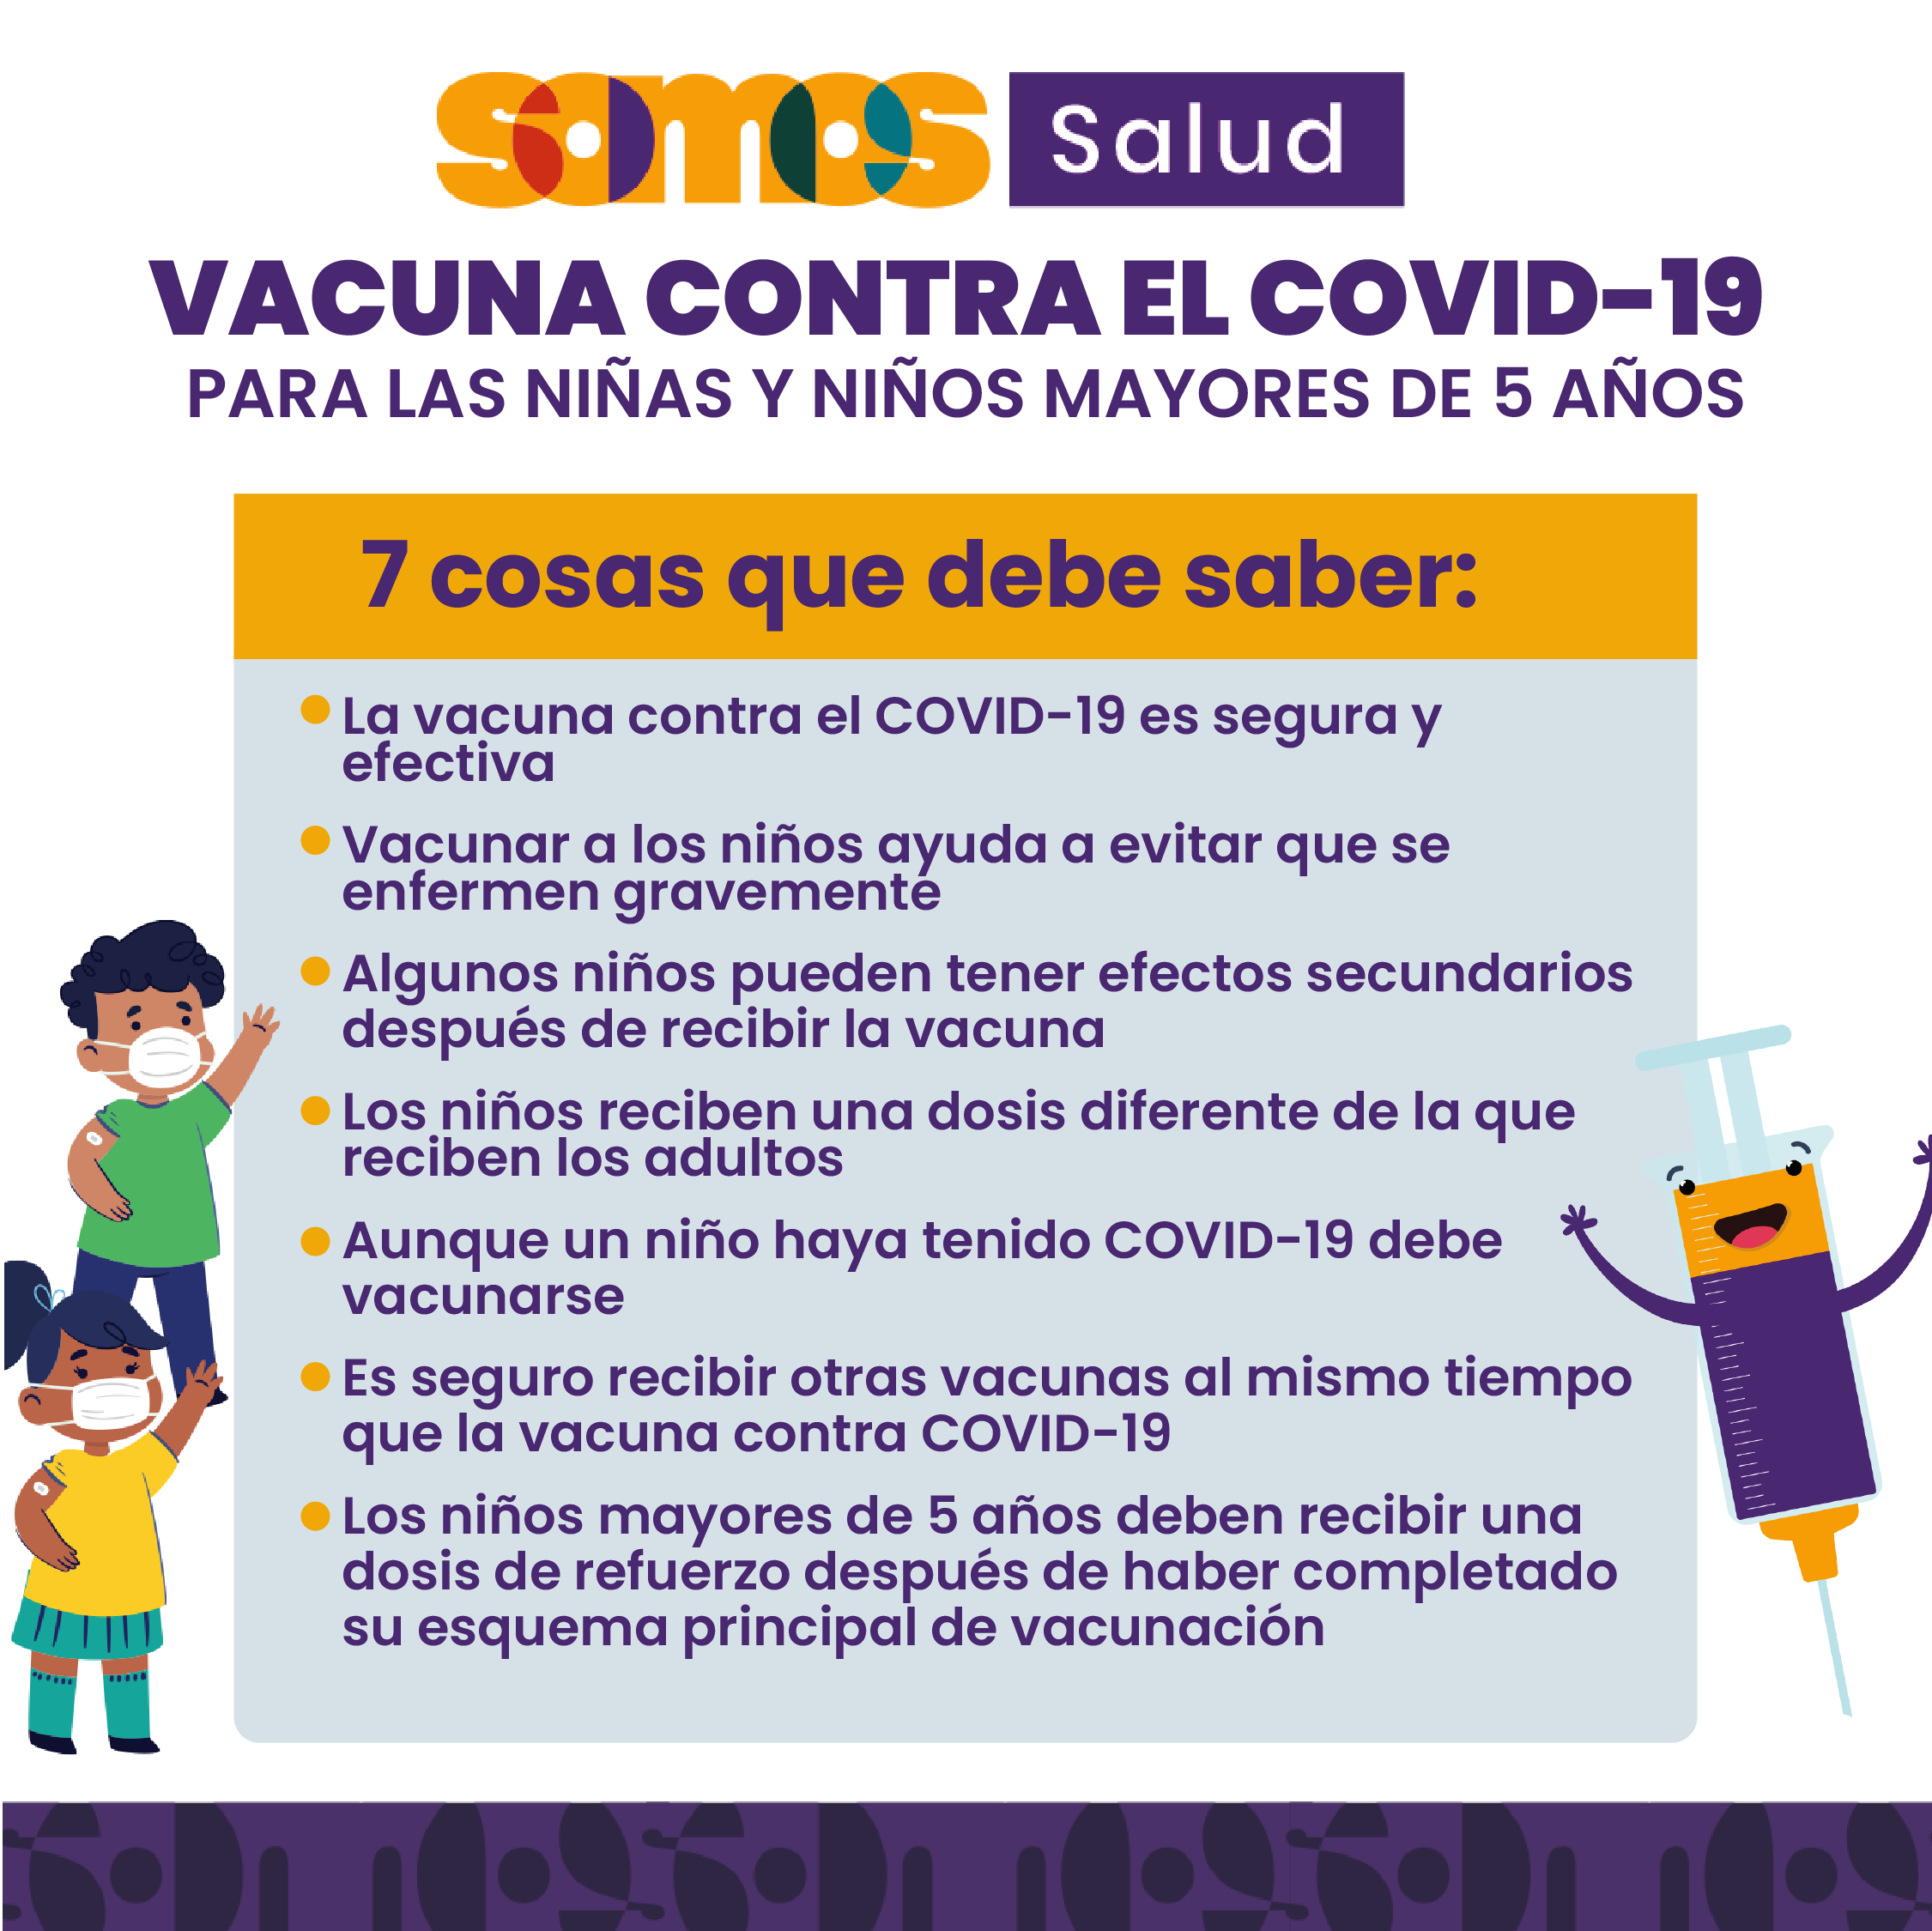 Vacuna contra el COVID-19 para las niñas y niños mayores de 5 años - Facebook 1